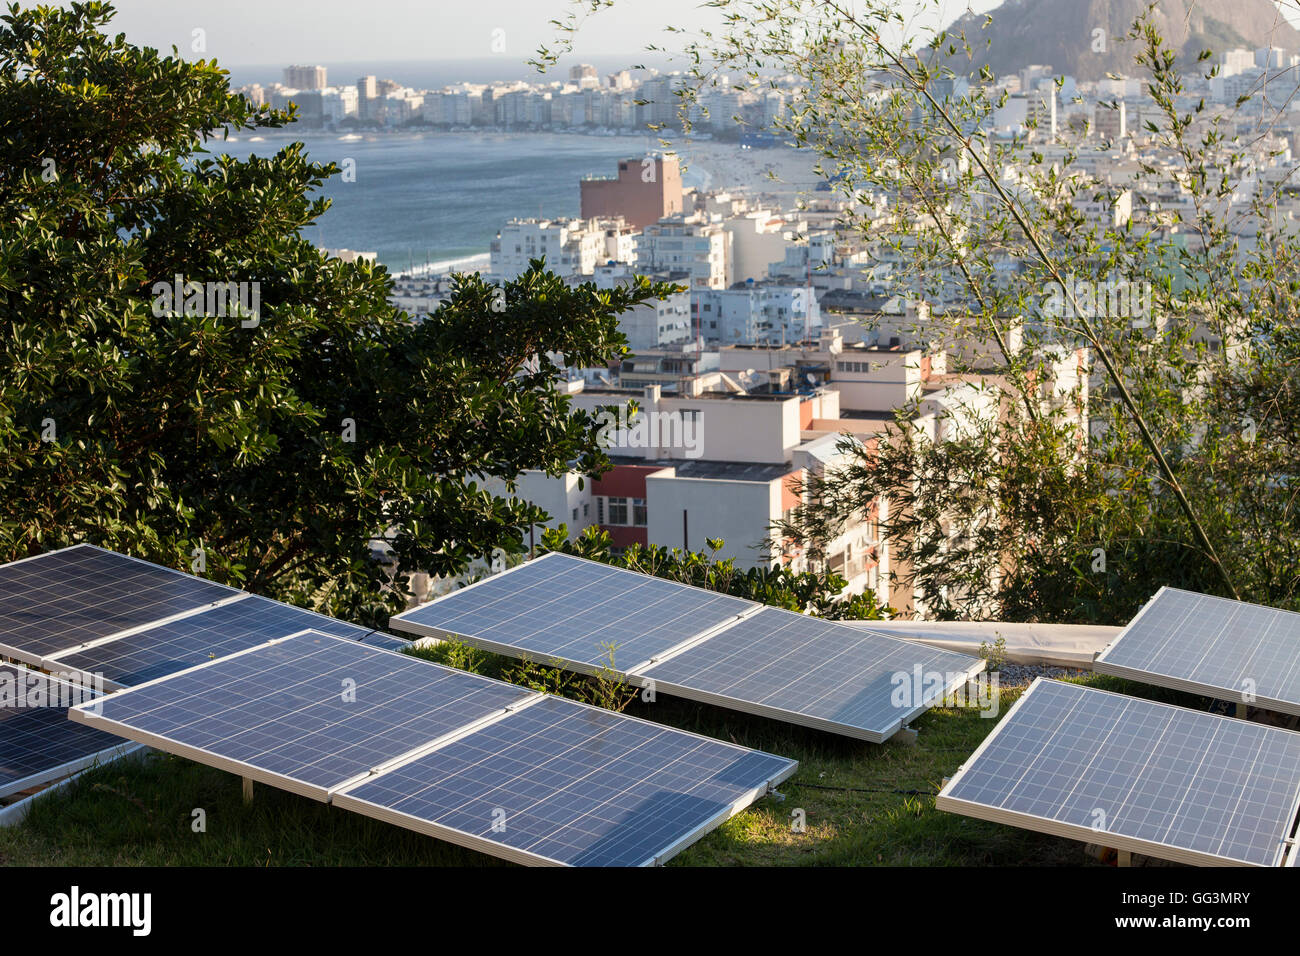 Étoiles da Babilonia eco-guesthouse & bar en haut de Favela Morro da Babilonia dans quartier de Leme - des panneaux solaires pour fournir de l'électricité propre nécessité - sur la plage de Copacabana, Rio de Janeiro, Brésil. Banque D'Images